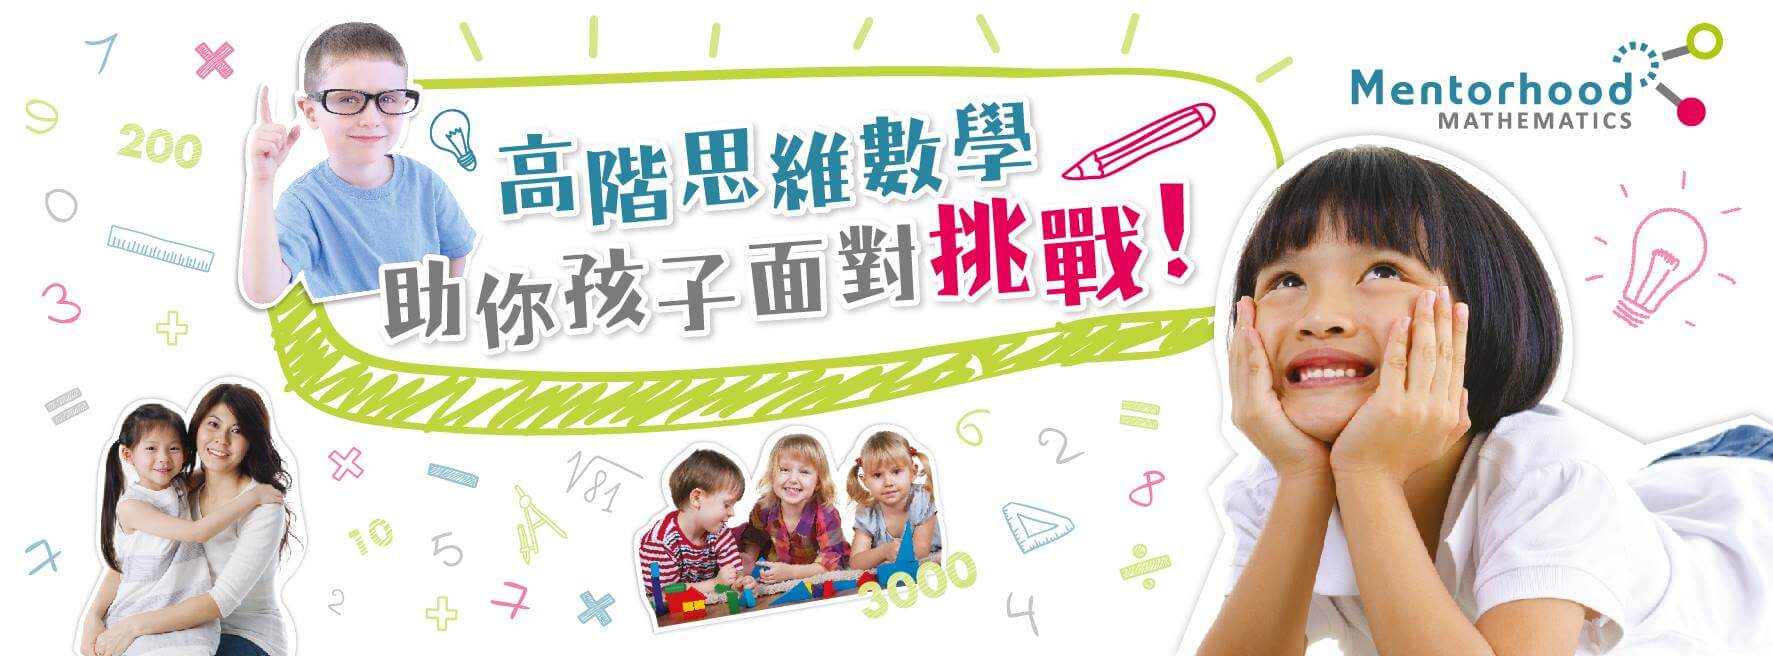 明理方教育中心Mentorhood Mathematics的特許經營香港區加盟店項目3